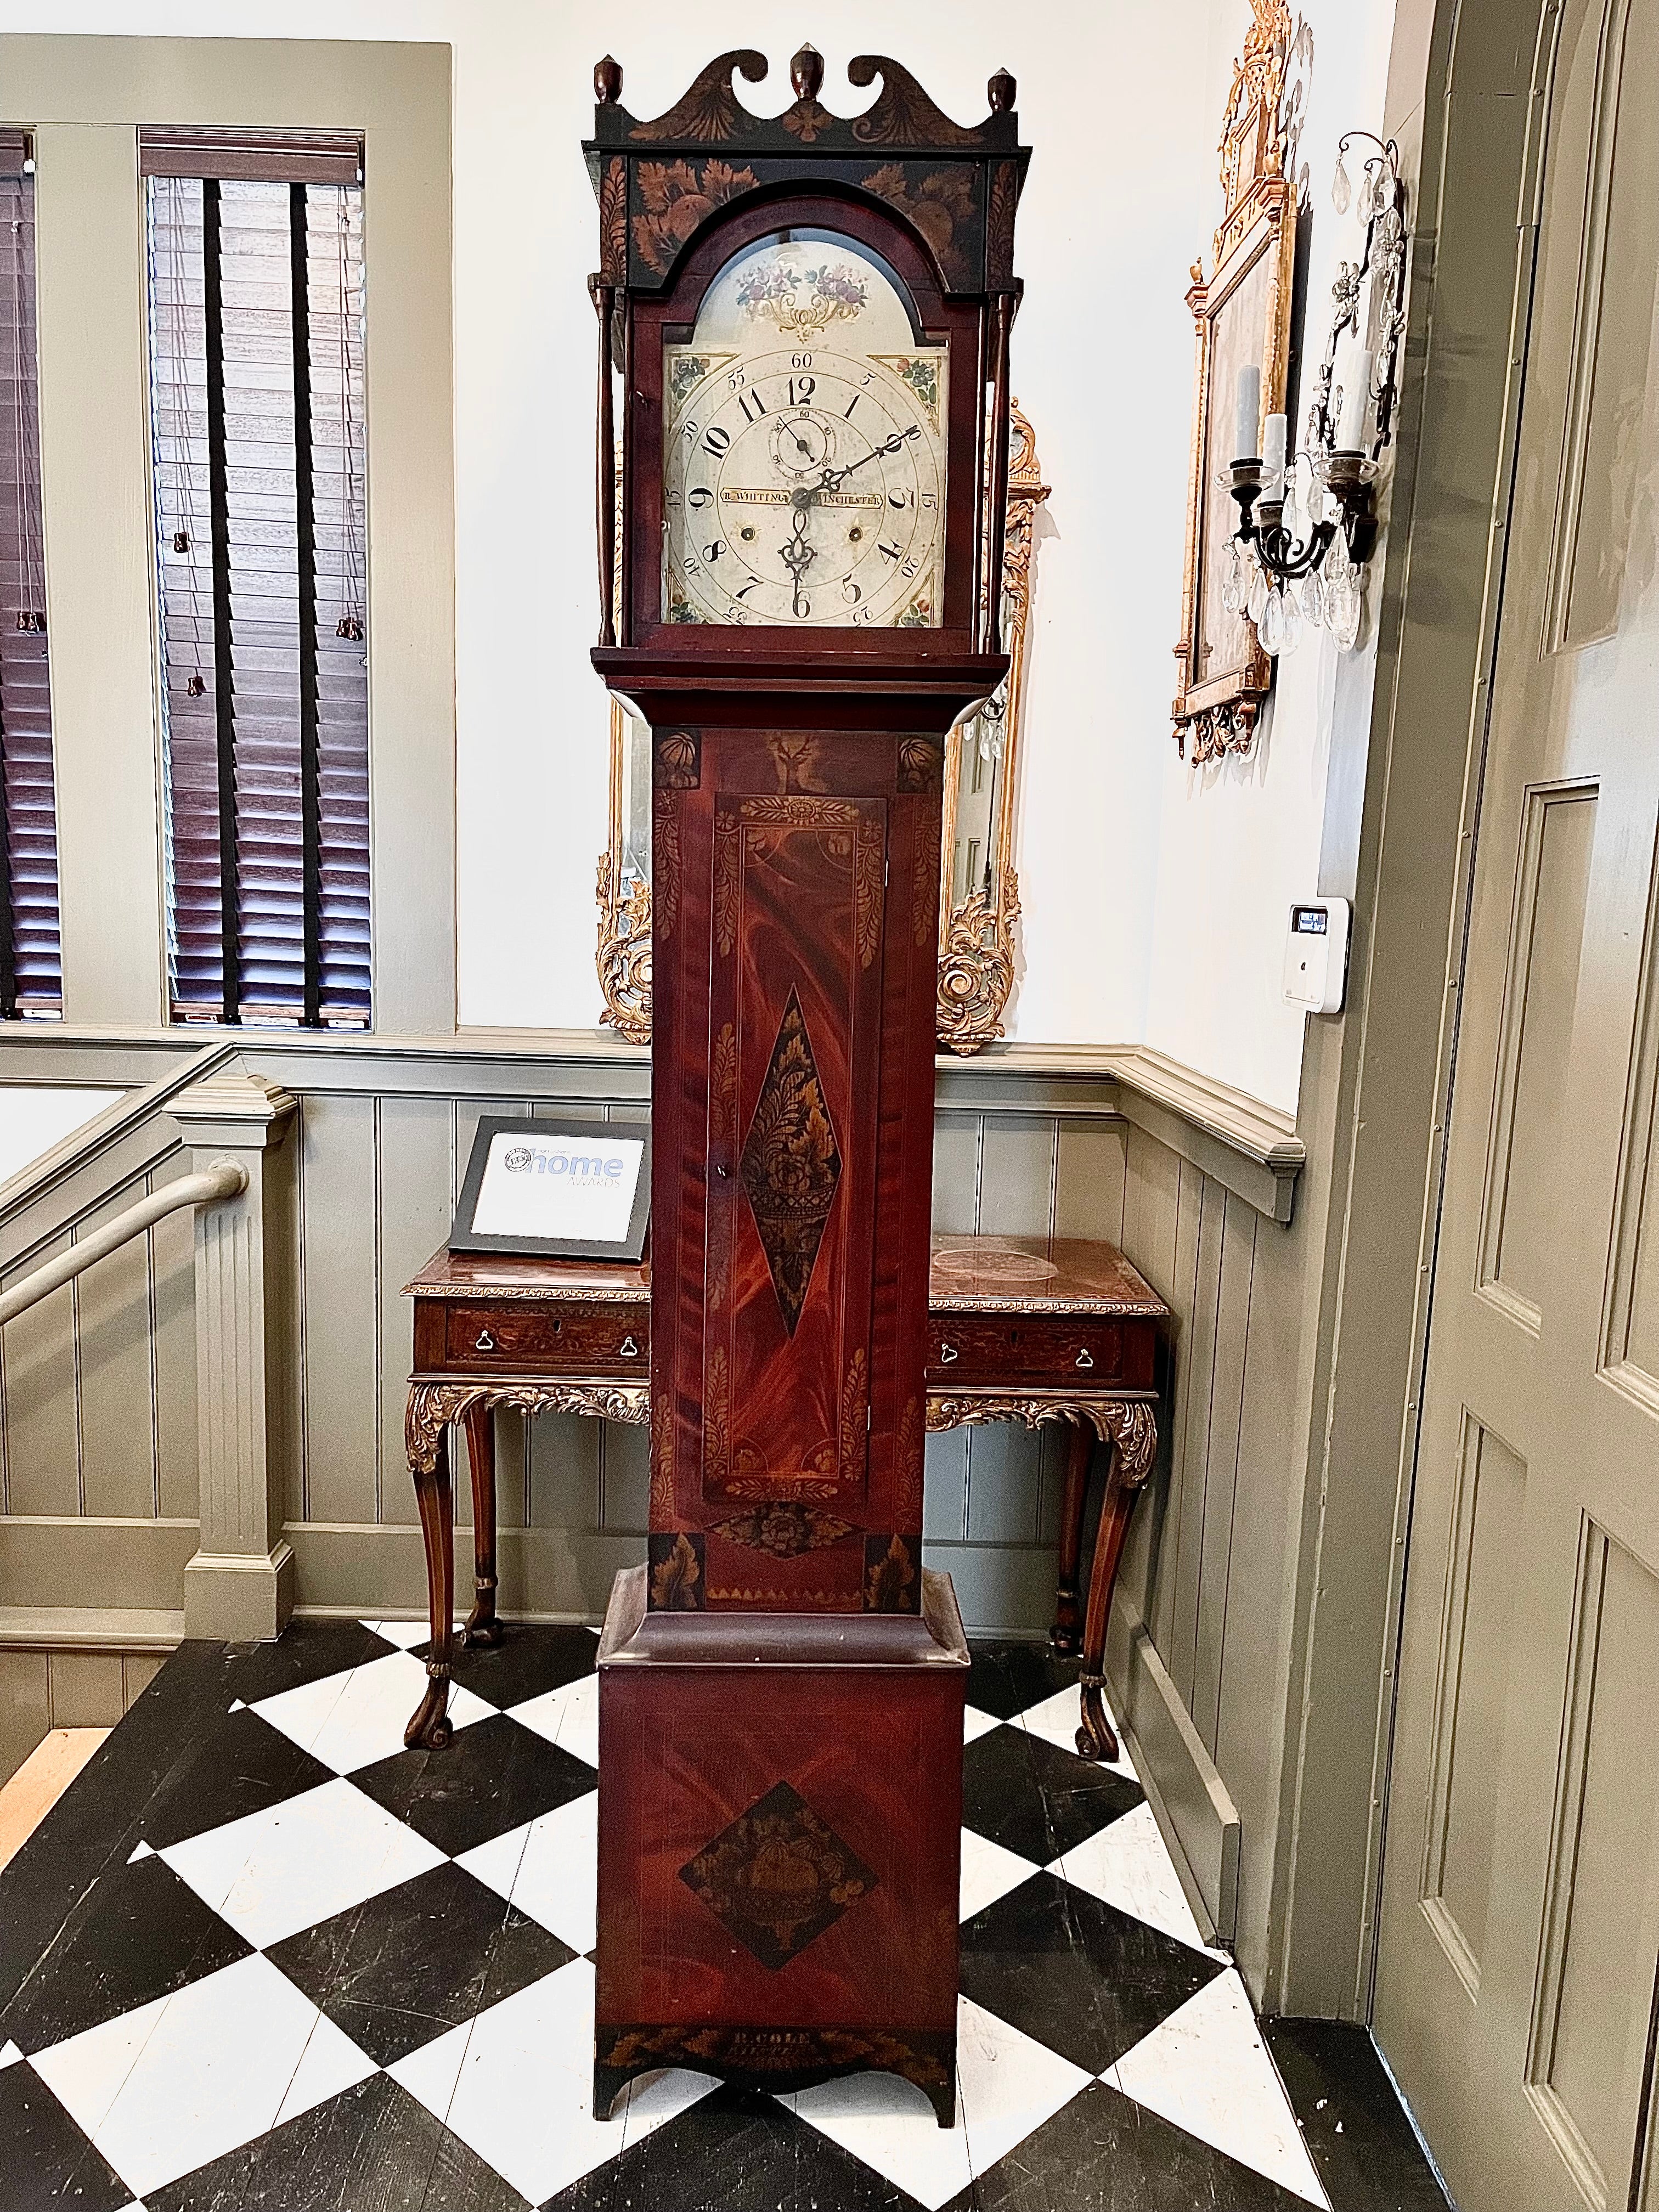 Eine seltene und vollständige American Federal Tall Case Clock.  Riley Whiting Wooden Works, Original.  Ein mit Korn bemalter und schablonierter Koffer von Rufus Cole.  Unterzeichnet  R. Cole Painter.  CIRCA 1820-25

Rufus Cole arbeitete in